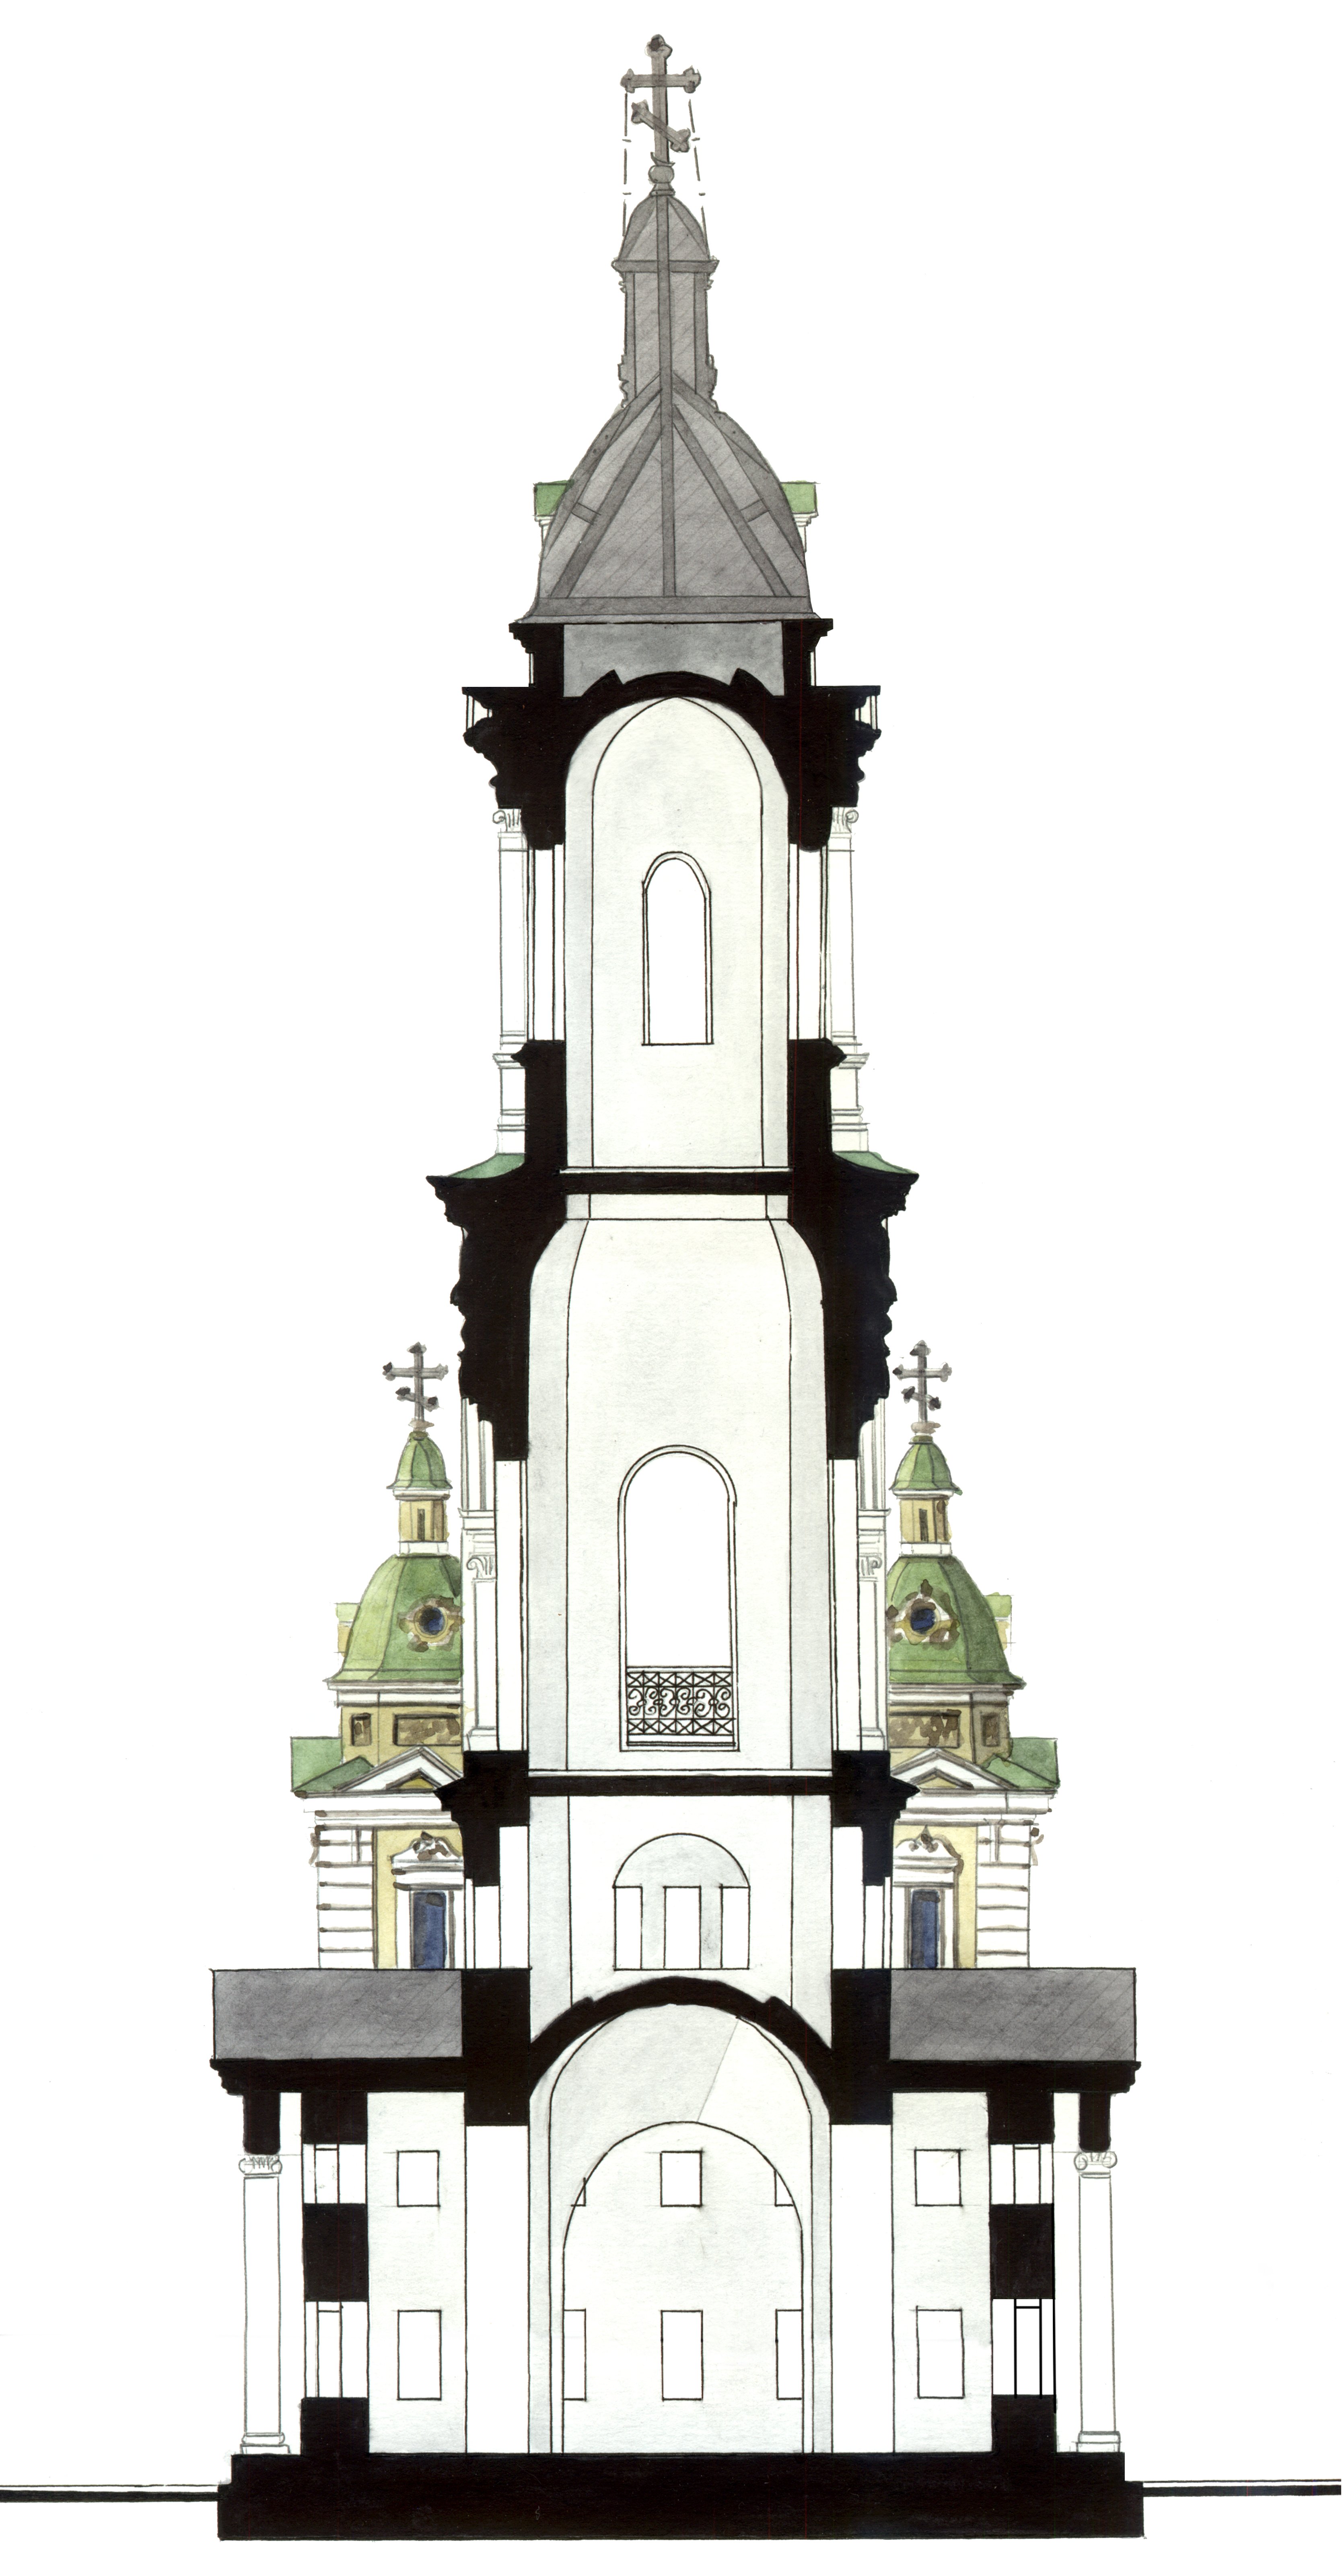 Проект на перестройку колокольни Петропавловской церкви в городе Сарапуле архитектора А. Б. Турчевича-Глумова. 1902 год